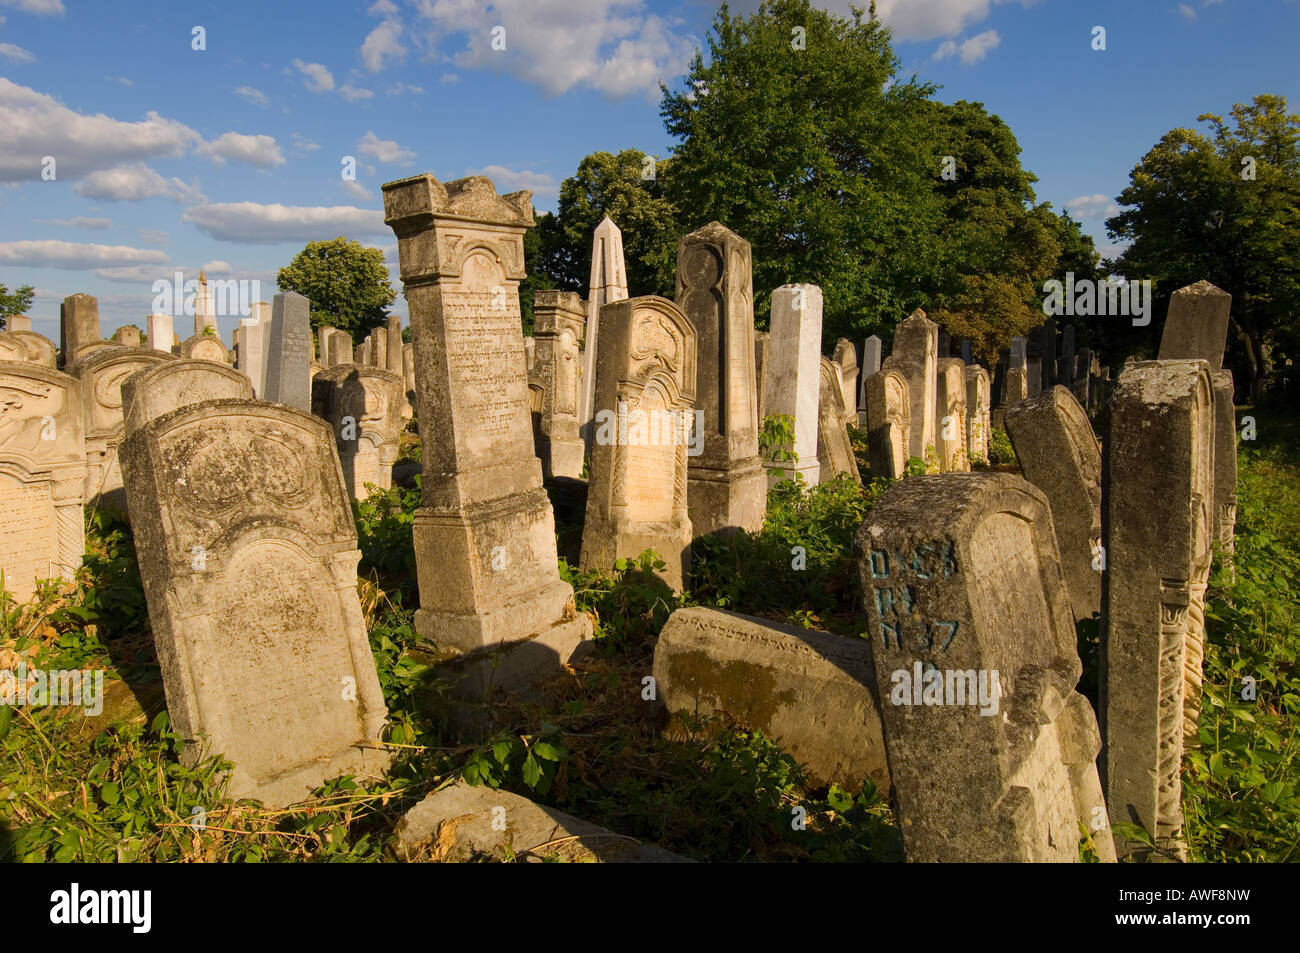 Europe Romania Moldavia Iasi Jewish Cemetery Stock Photo